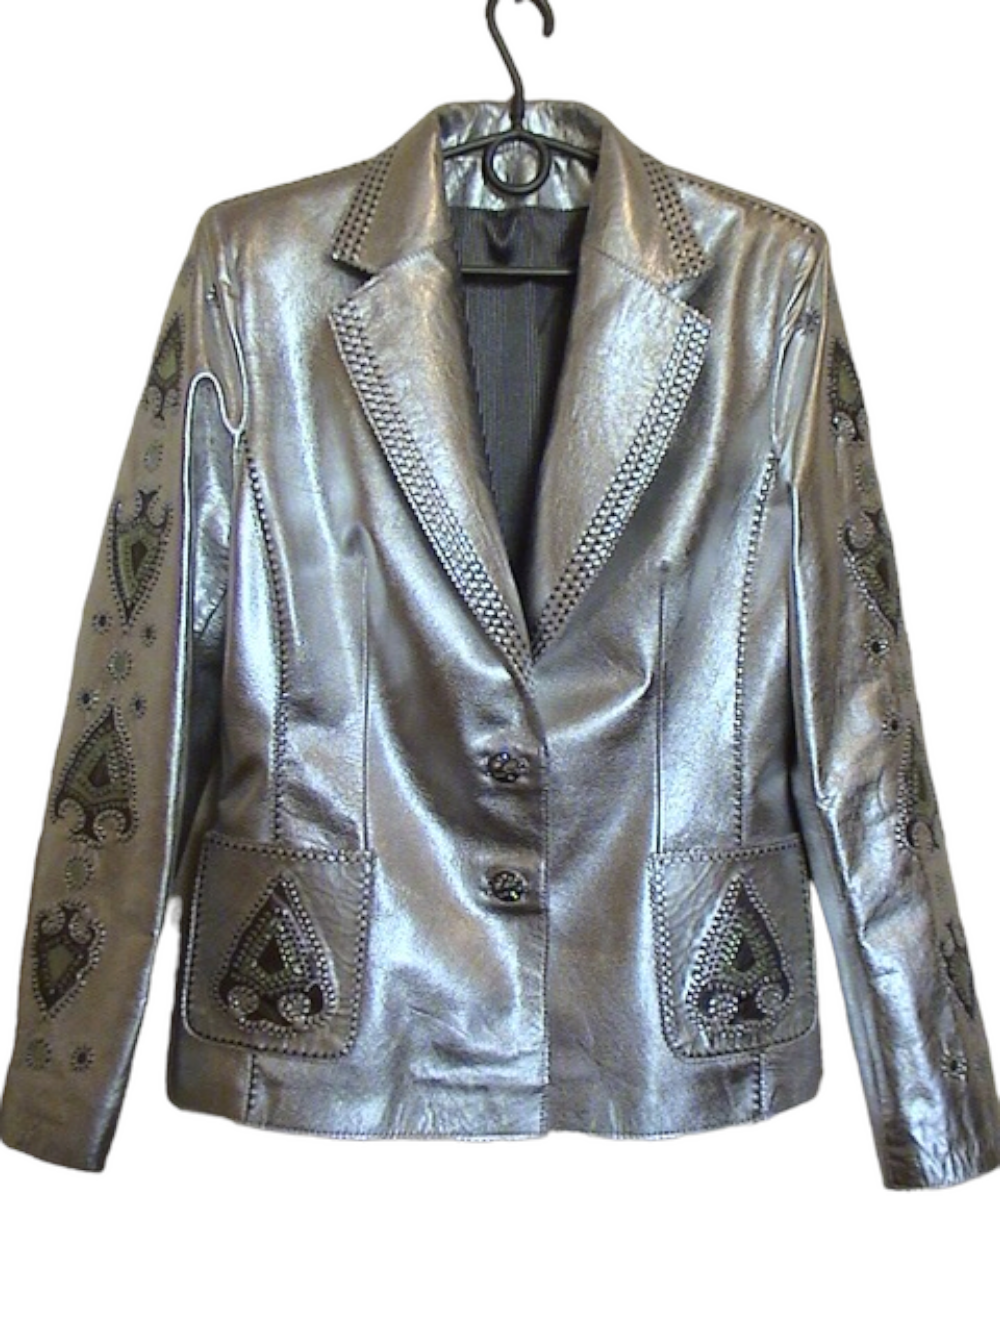 картинка кожаные  "Монке" - Женский кожаный жакет, цвет серебро, авторский декор от Ирины Берзиной